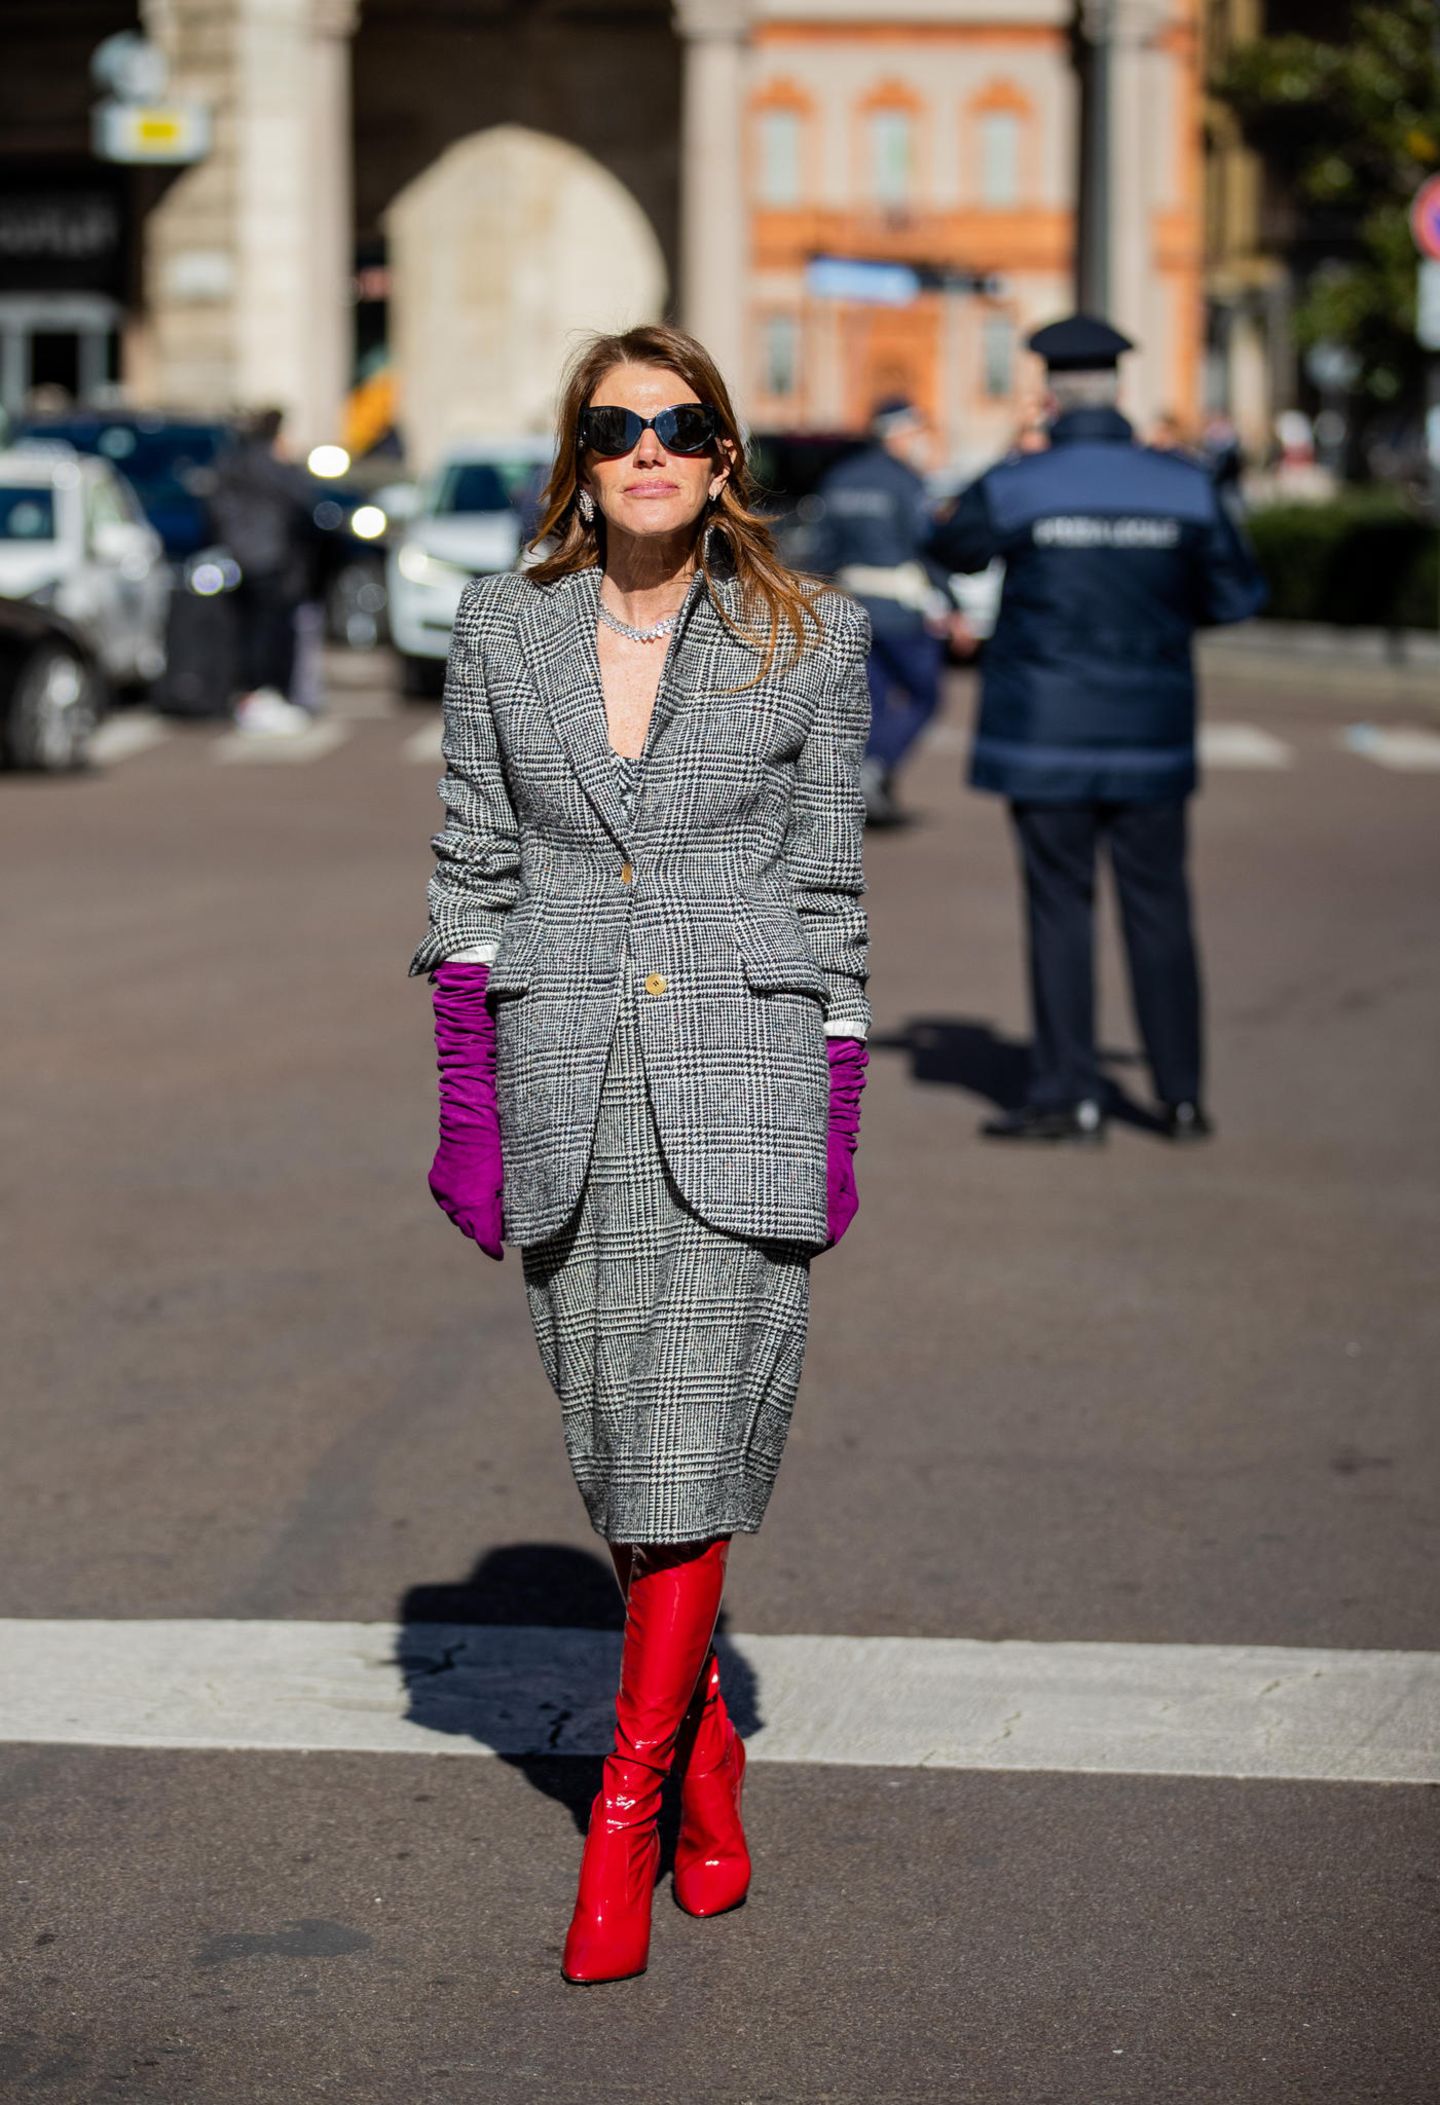 Während das Kostüm von Anna dello Russo einen klassischen Flair versprüht, dürfen ihre Accessoires so richtig knallen. Die roten Lackstiefel in Kombination mit den violetten Handschuhen sorgen dafür, dass der Look der italienischen Modejournalistin definitiv im Gedächtnis bleibt.